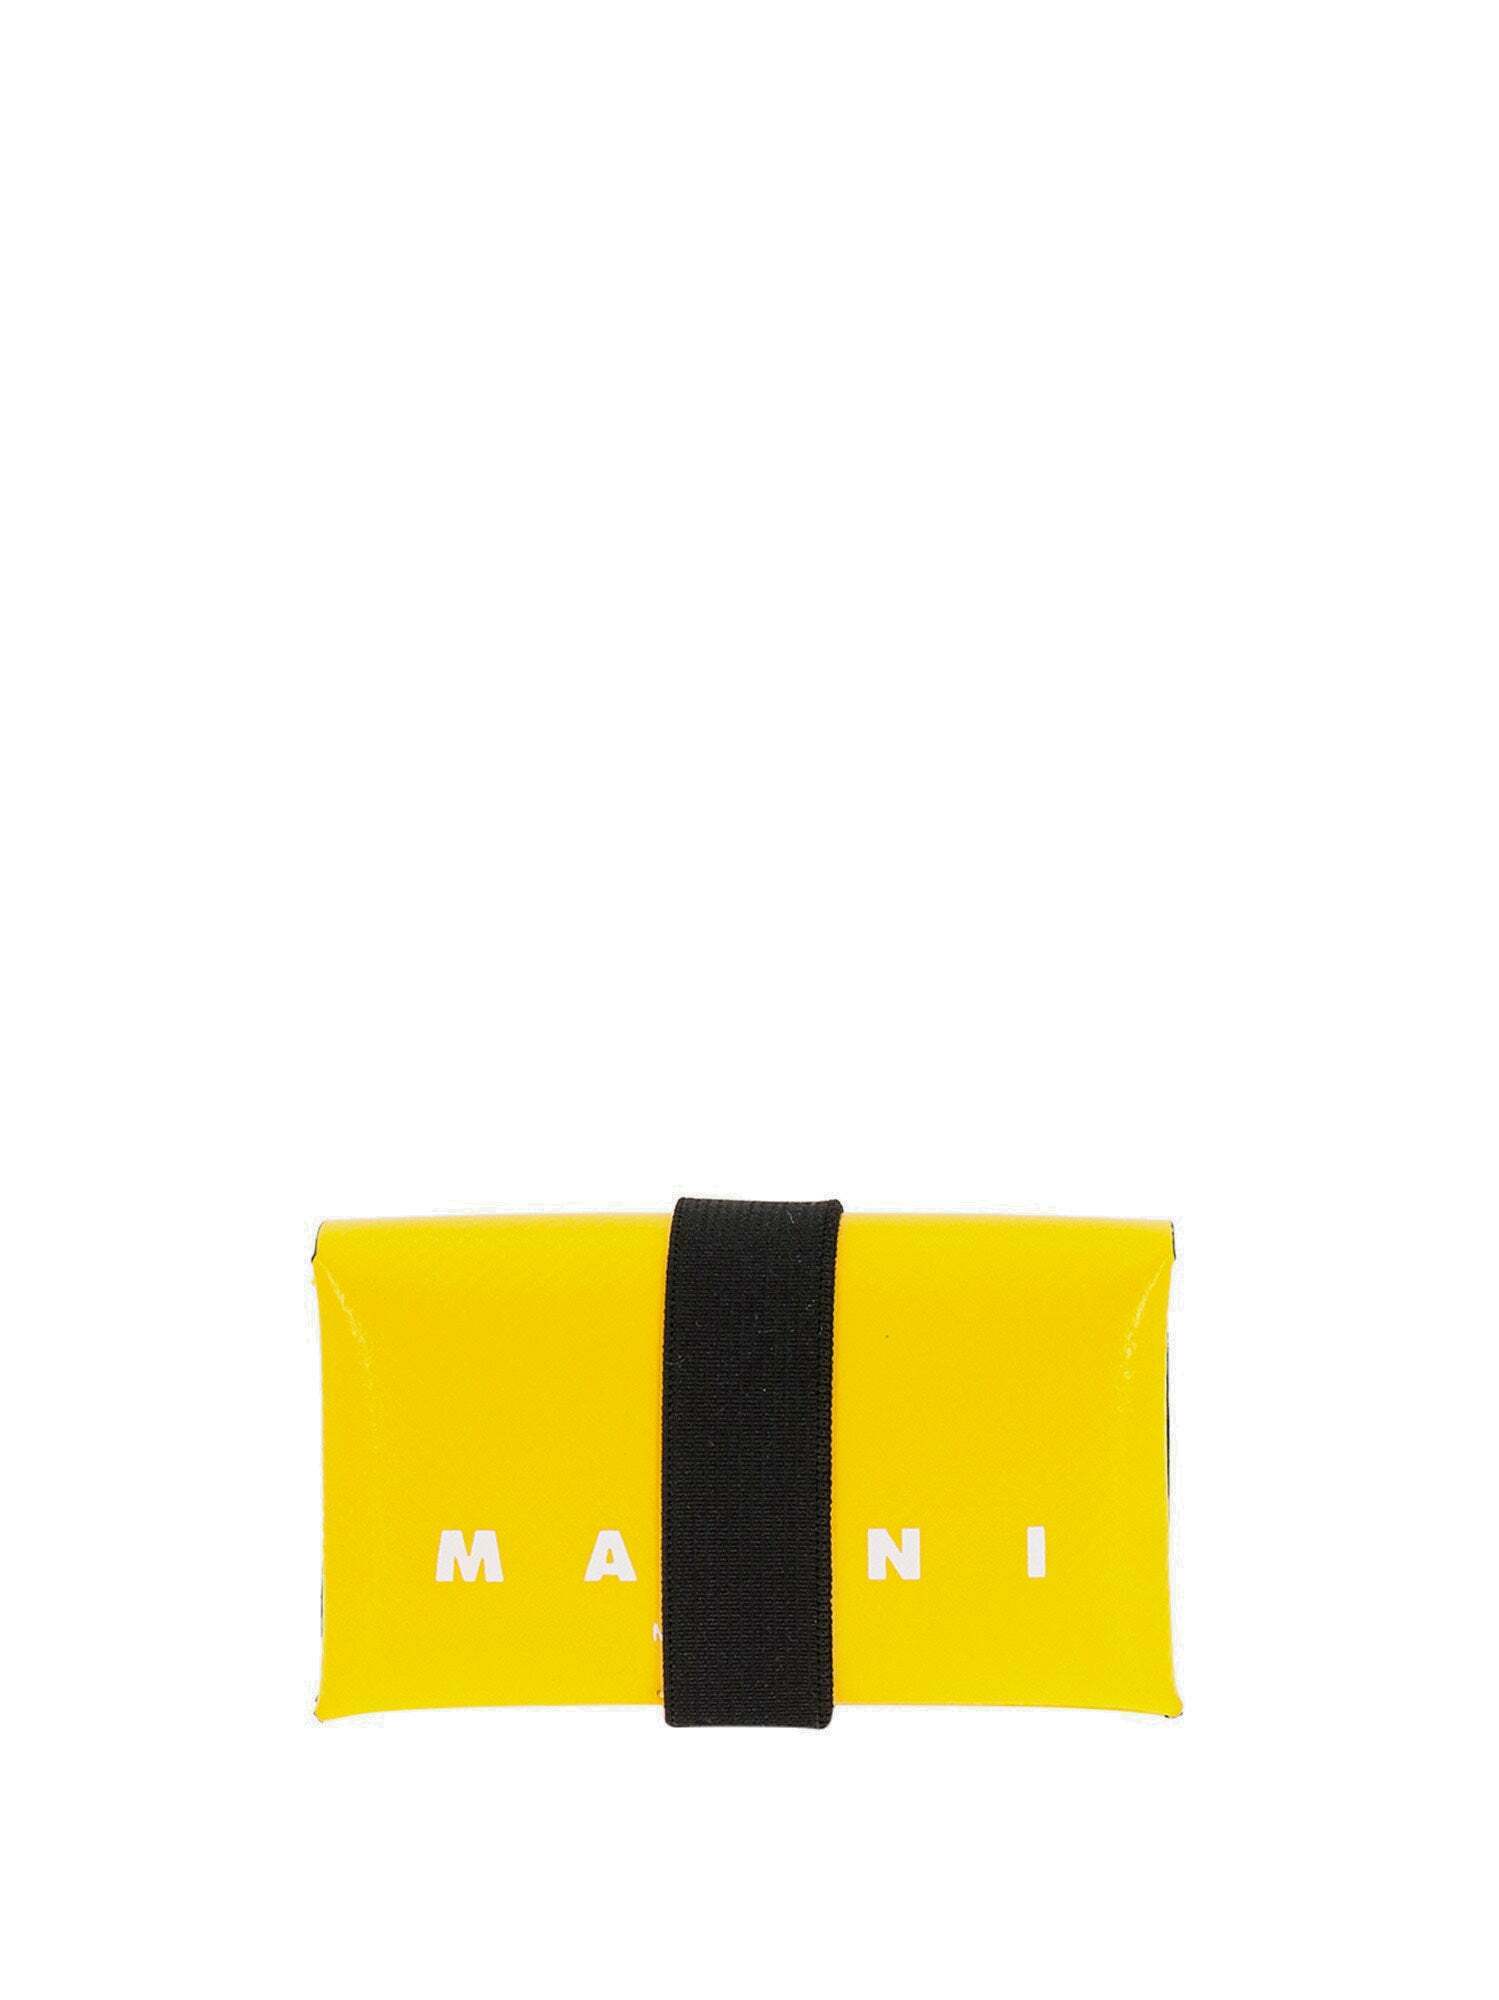 Marni Wallet Yellow Mens Marni